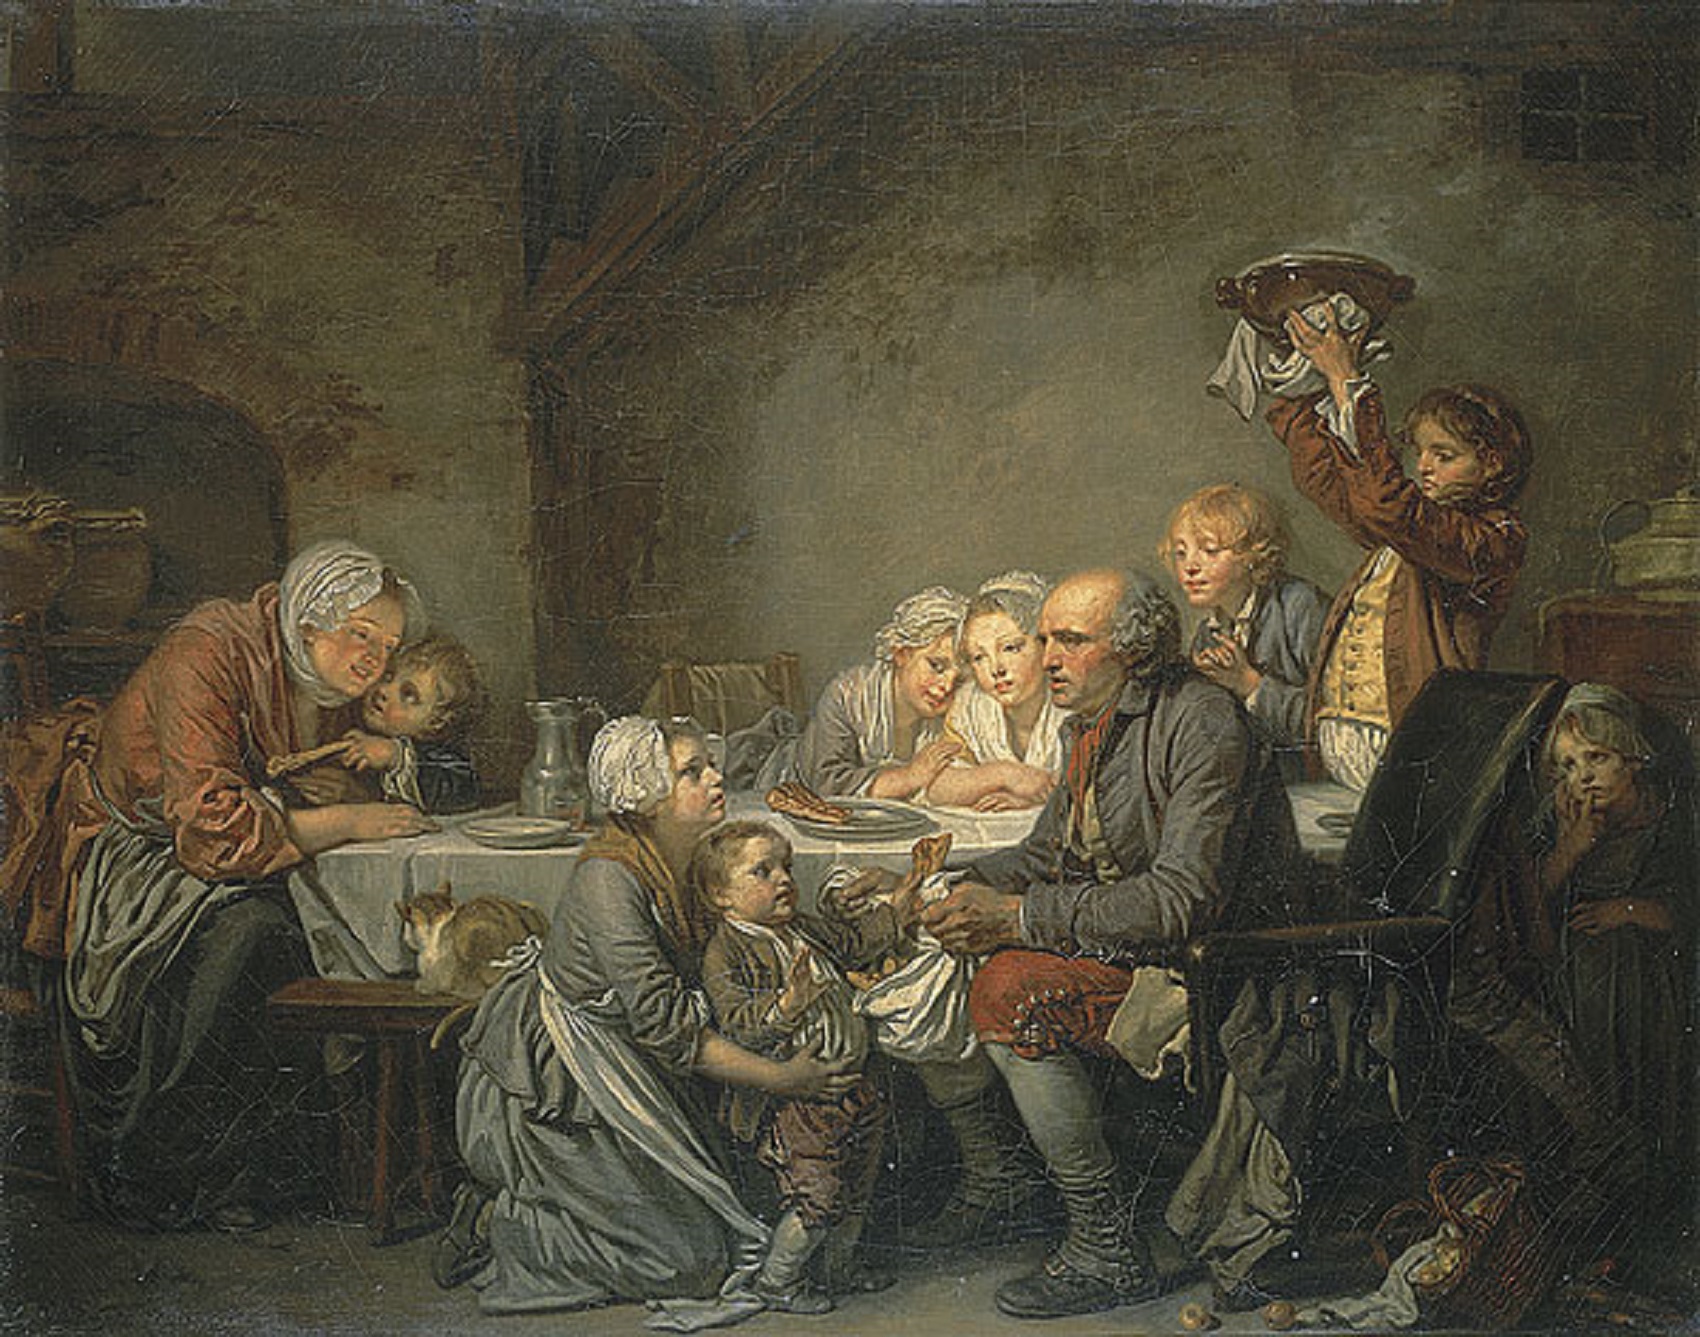 Tableau de Jean-Baptiste Greuze peint en 1774 : Le gâteau des rois. Représentation d'une famille de paysans aisés au XVIIIe siècle.&nbsp;© Musée Fabre, Montpellier.